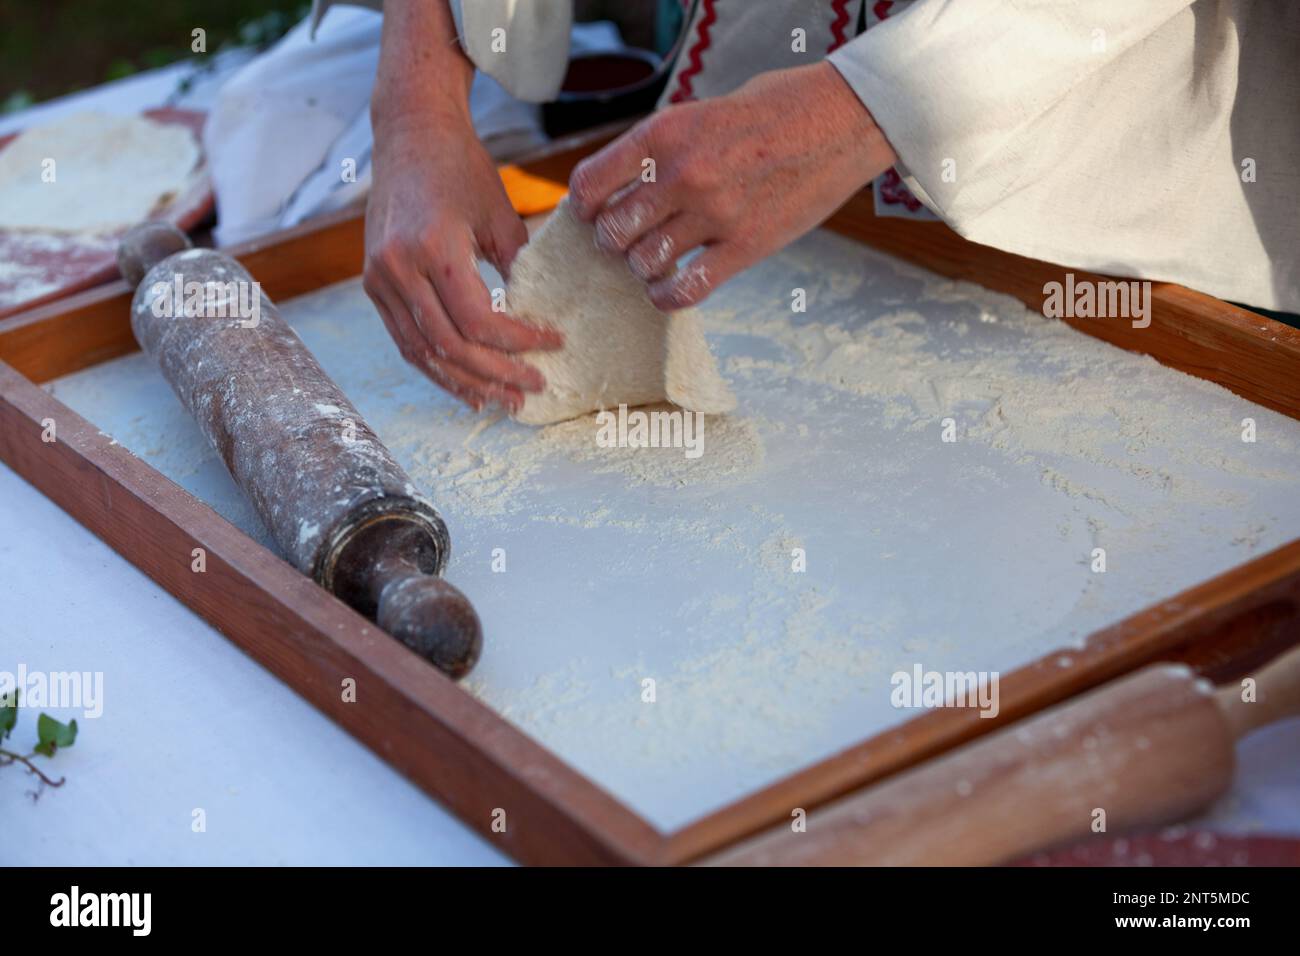 Mittelalterlicher Bäcker, der einen Fouace herstellt (auch bekannt als Fouée). Es ist ein rundes und luftiges Brot aus dem Westen Frankreichs (Region Touraine und Anjou der Loire VA) Stockfoto